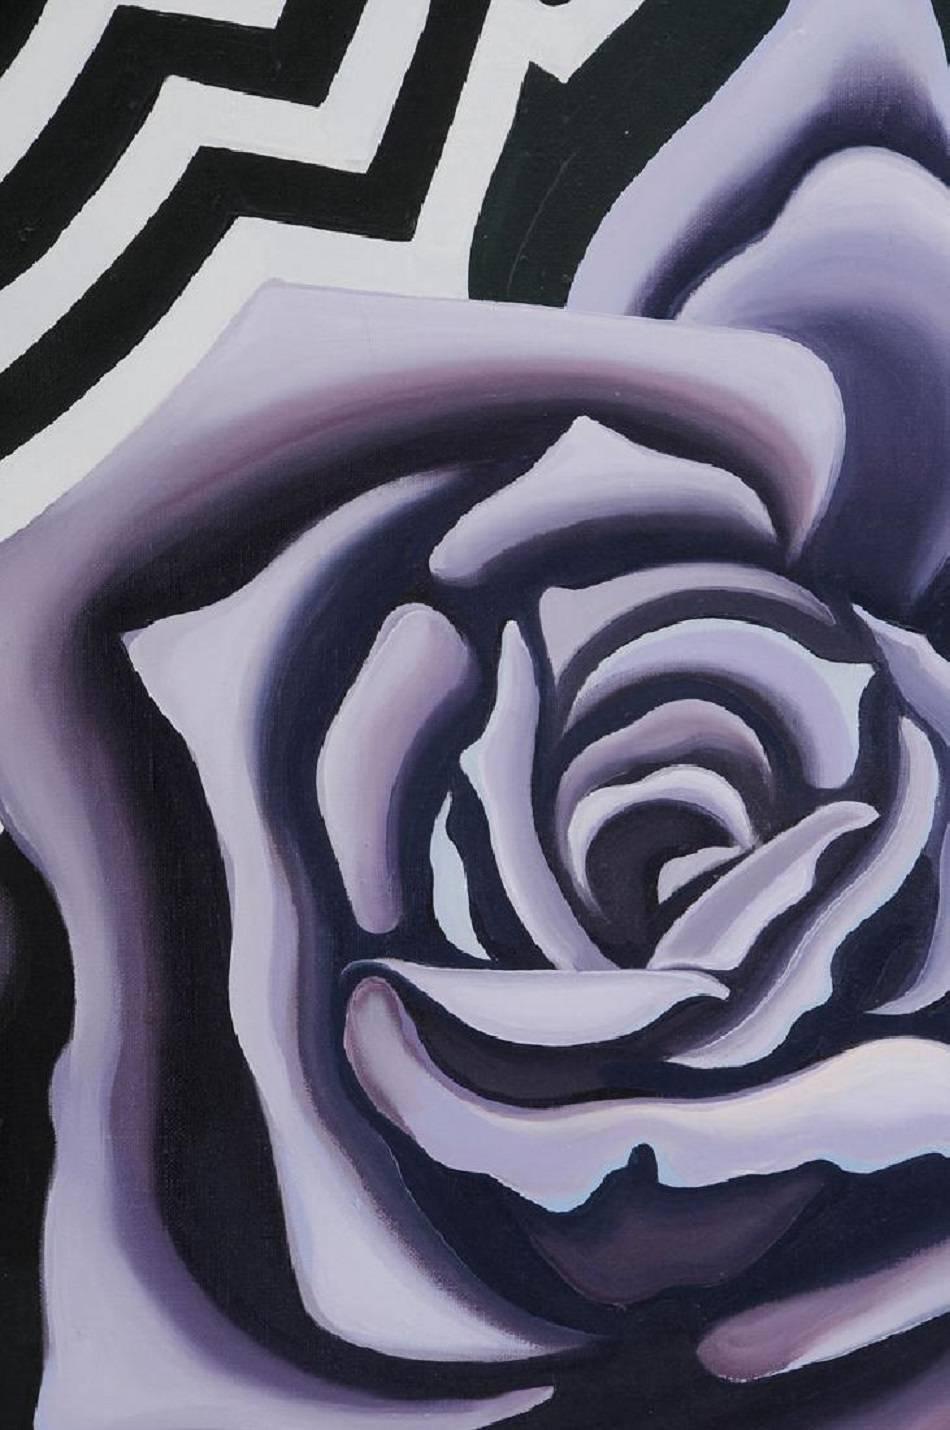 Zwei violette Rosen 1974, Op Art Floral Öl auf Leinwand Gemälde – Painting von Lowell Nesbitt